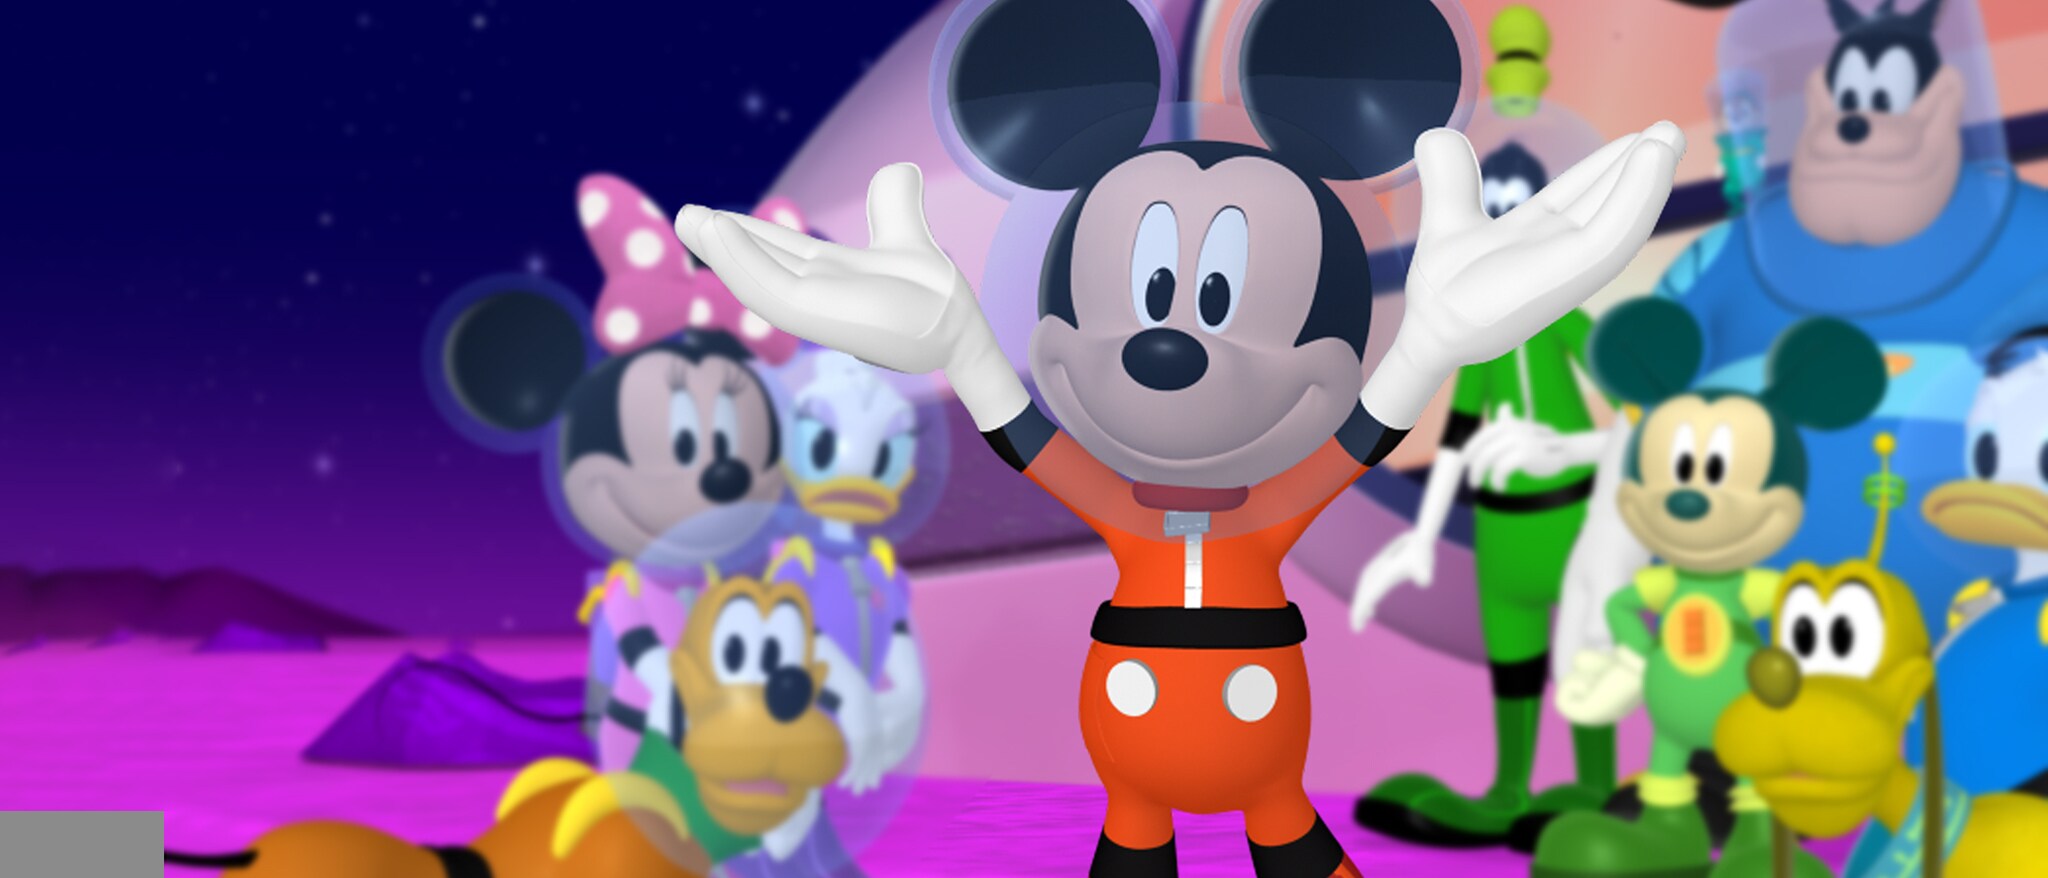 mickey mouse clubhouse -   Mickey mouse, Mickey, Mickey